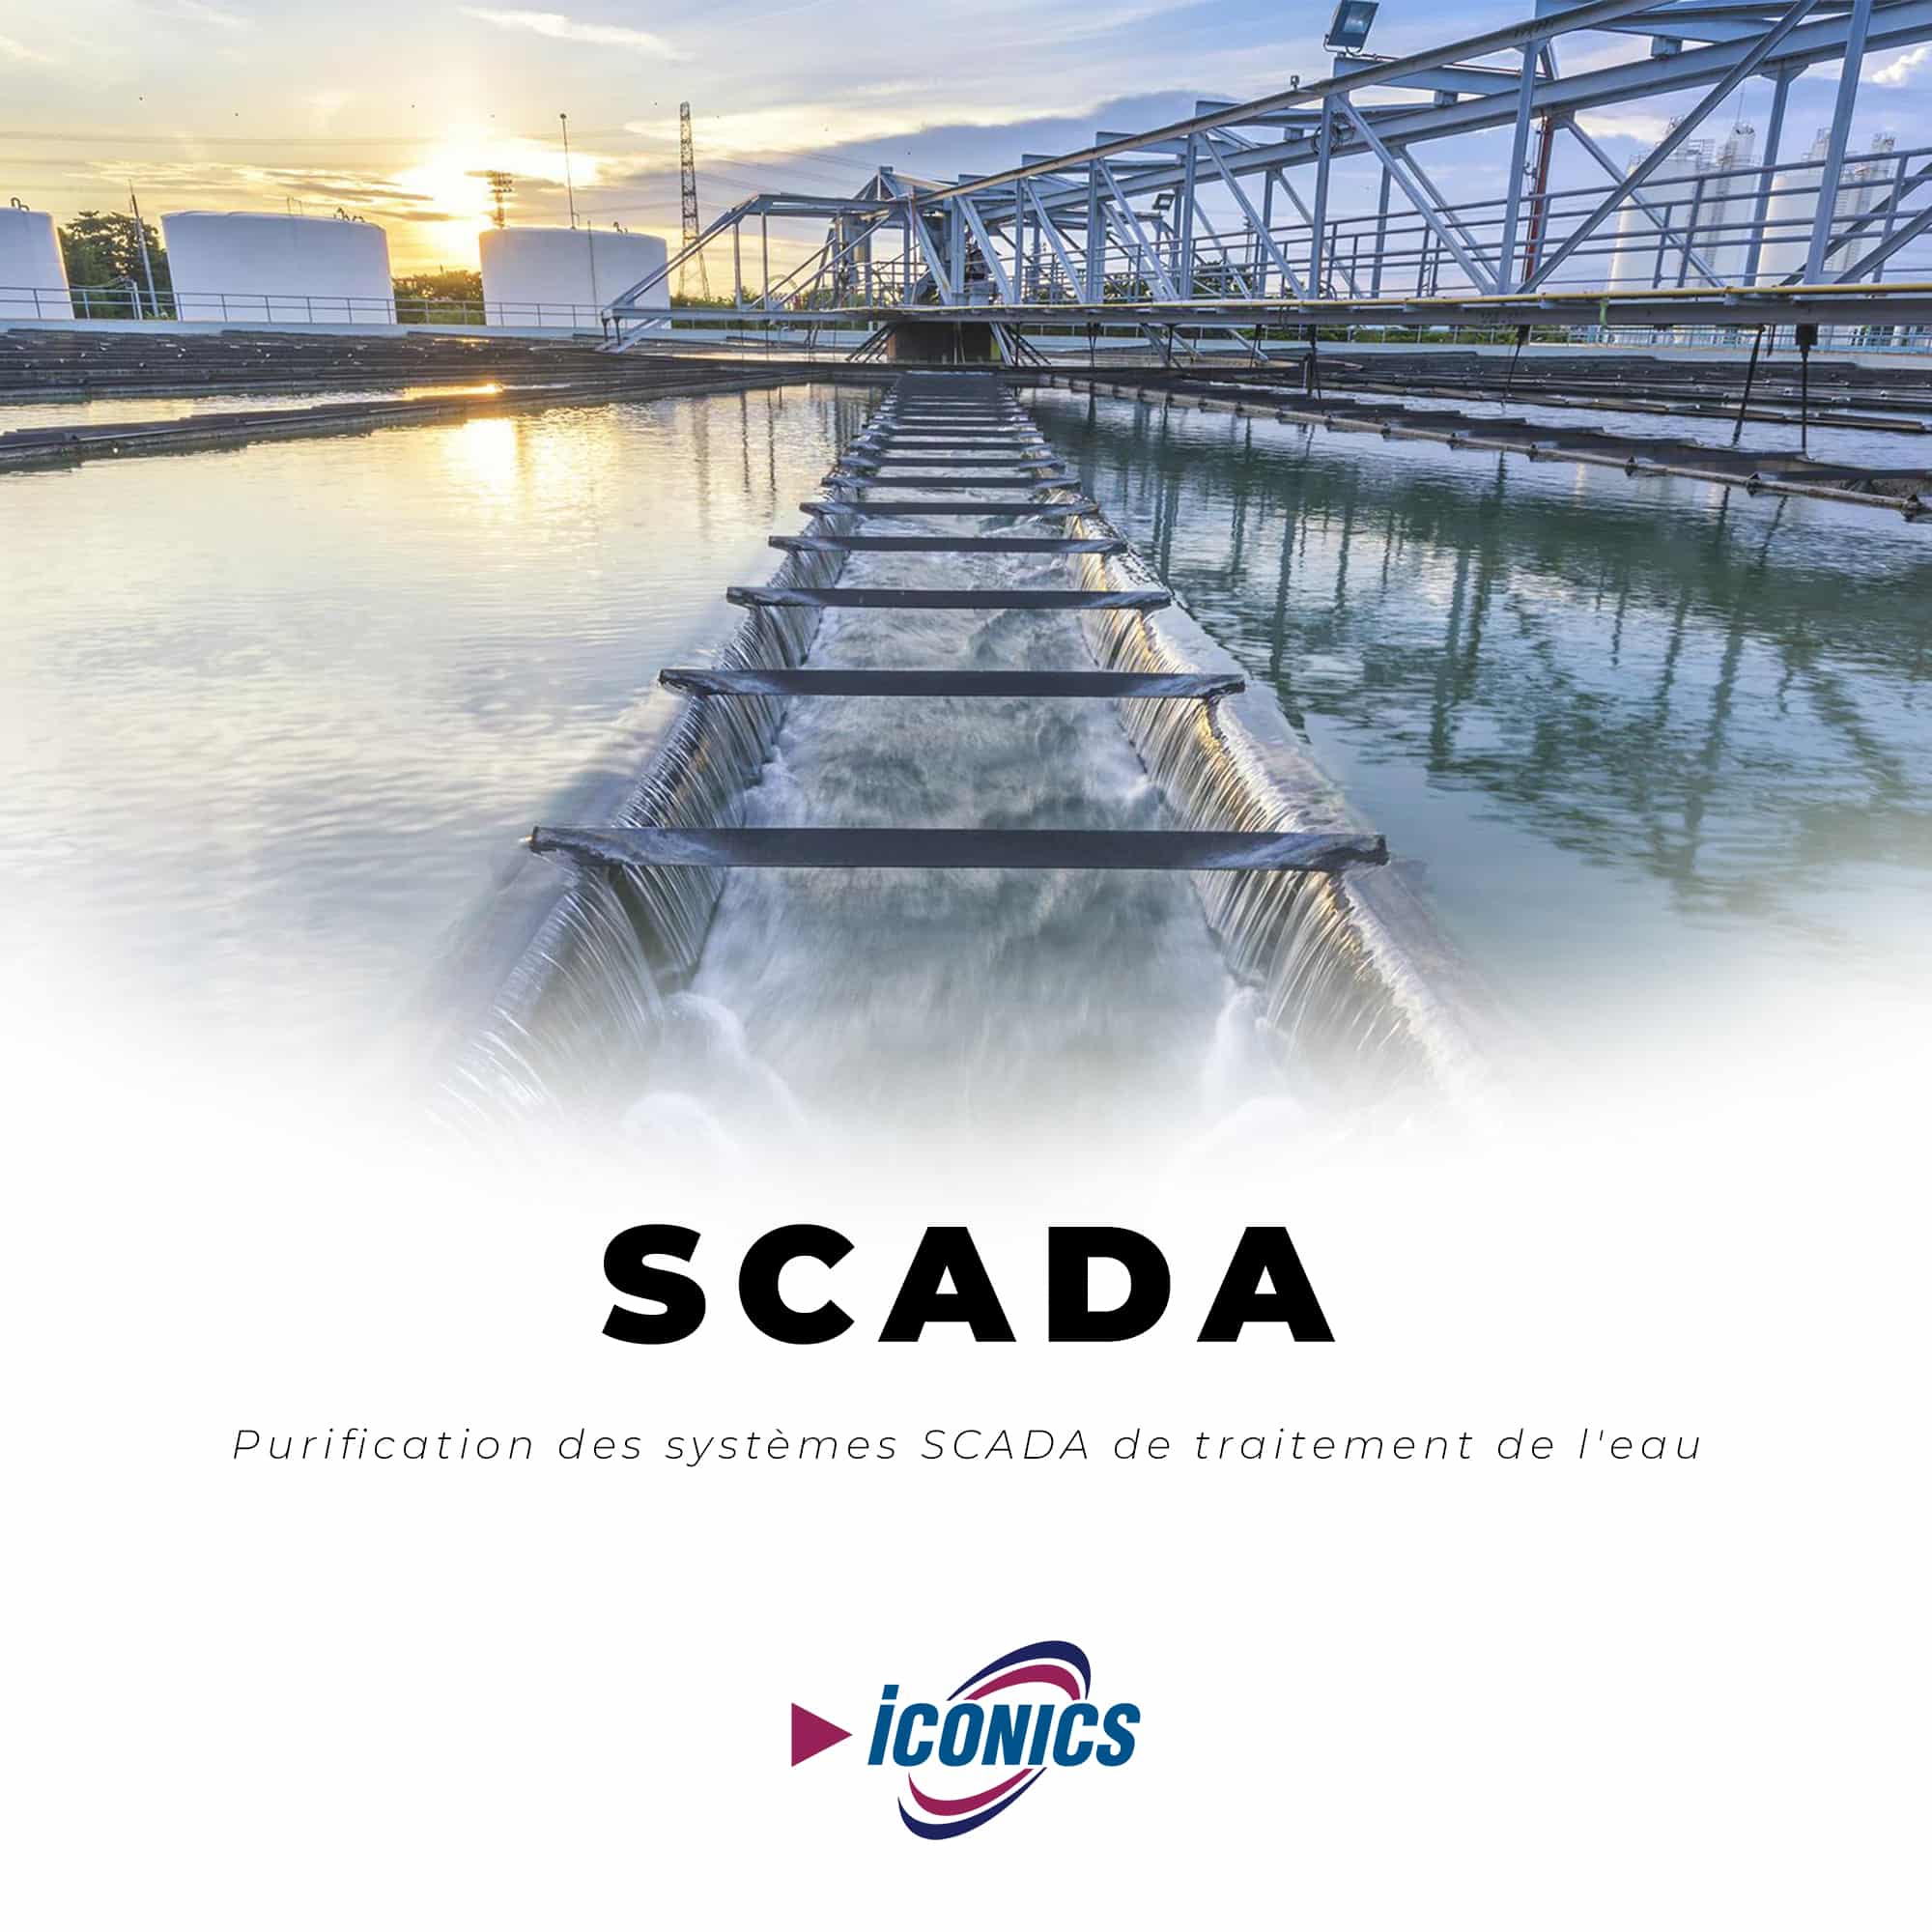 Purification traitement de l'eau SCADA